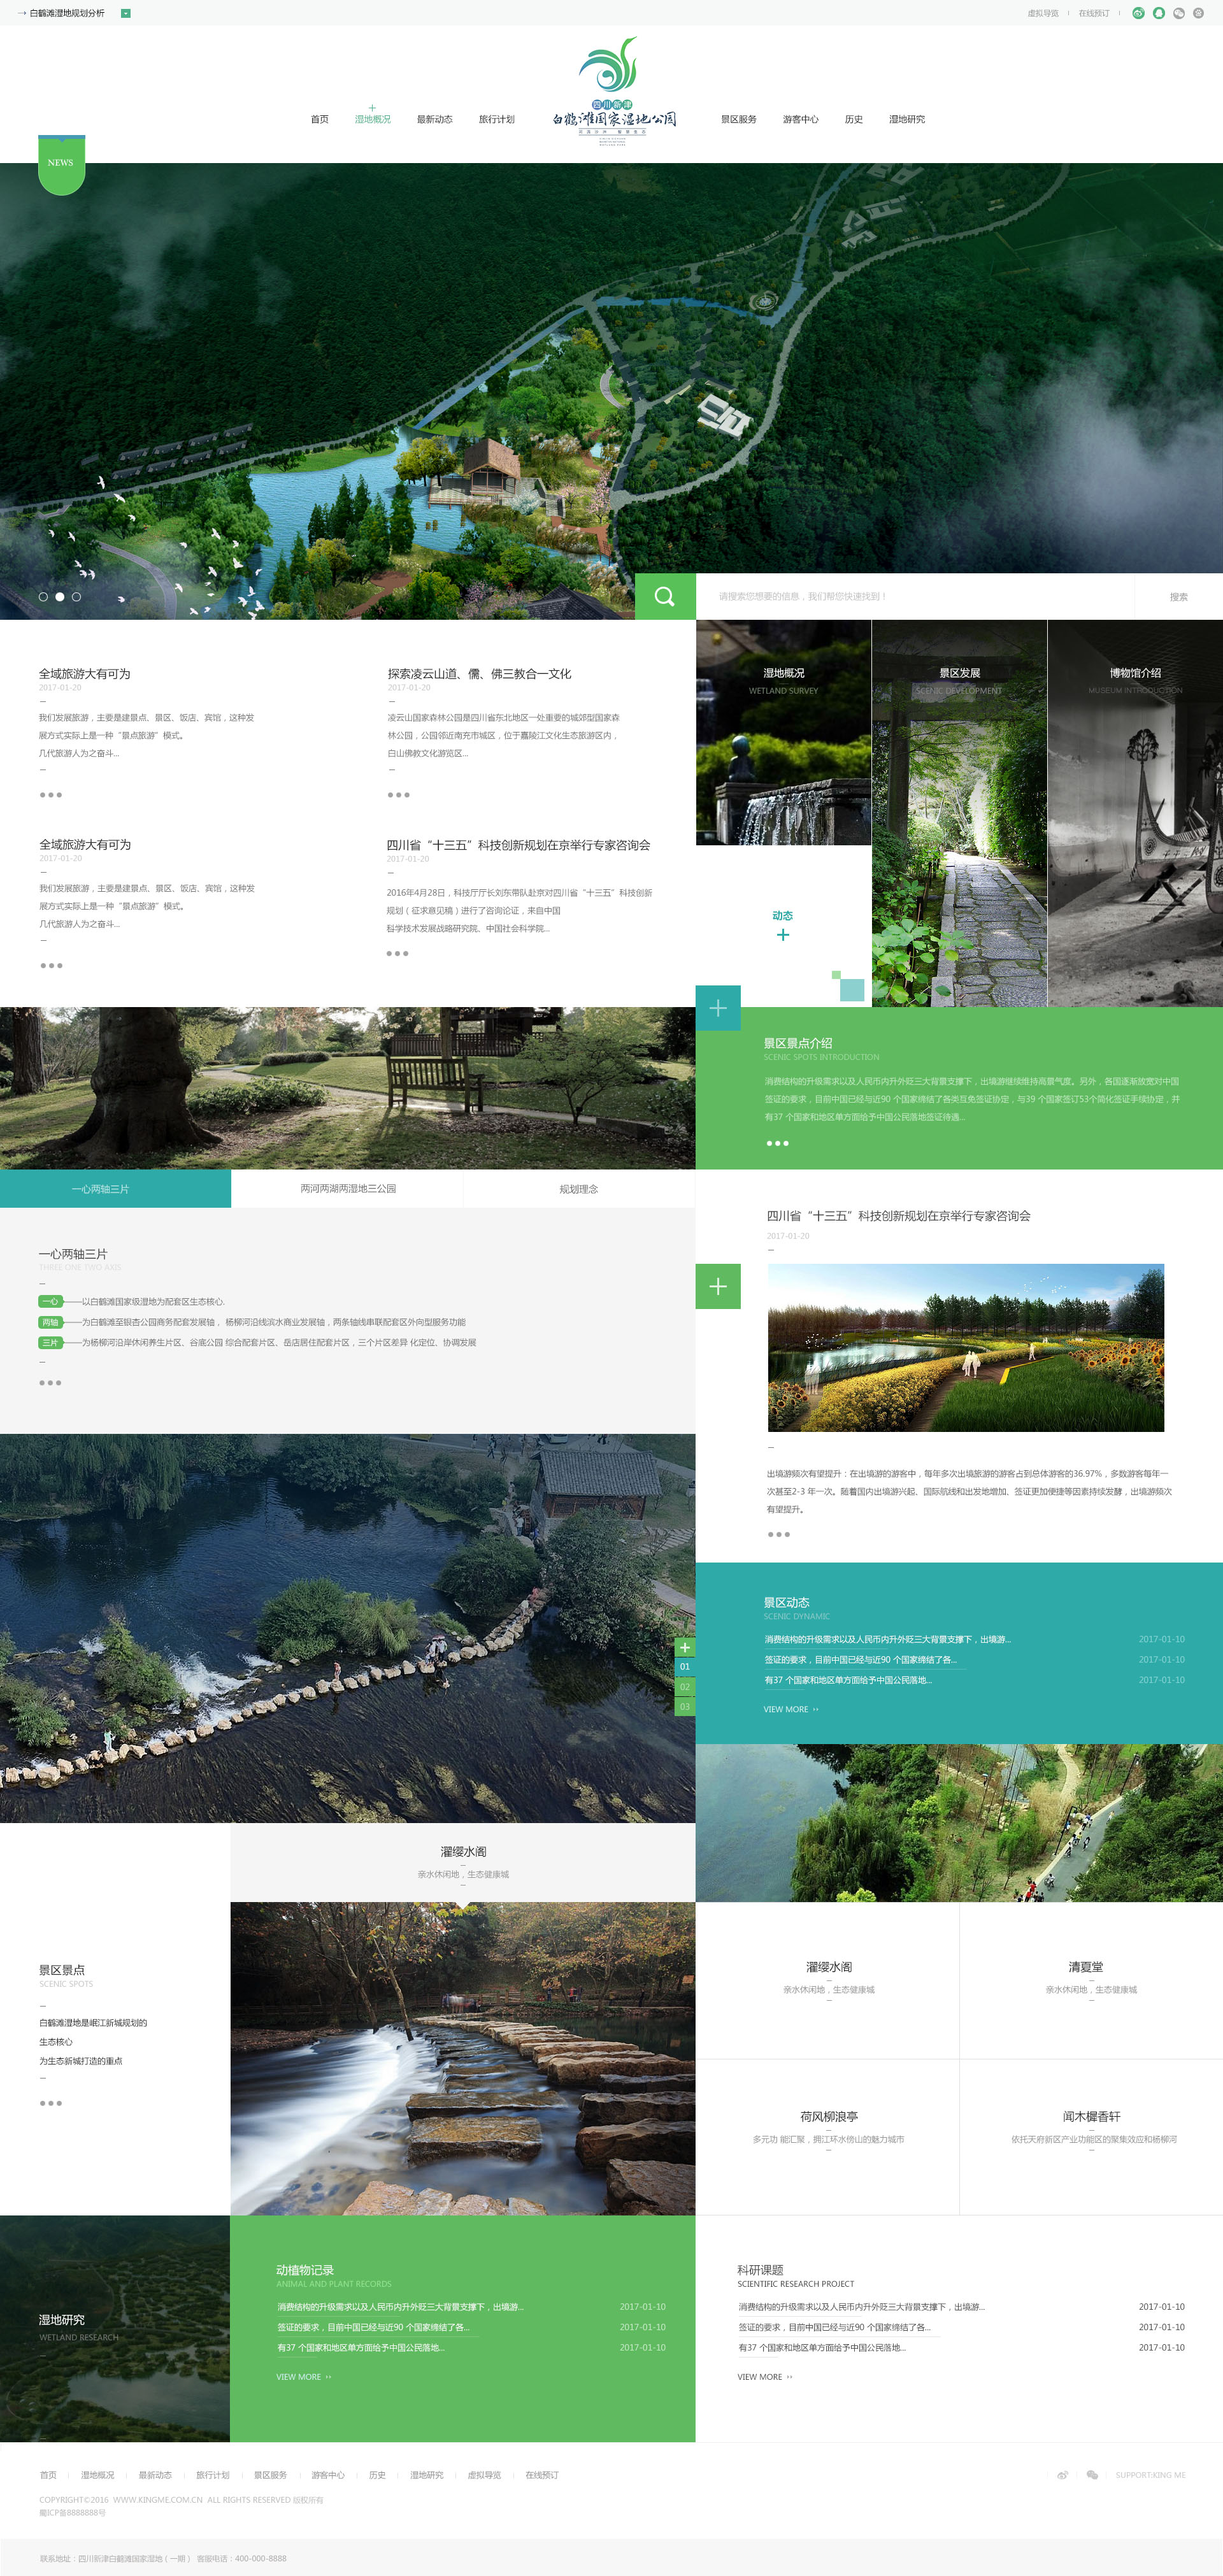 大气绿色旅游企业网站设计PSD素材源码